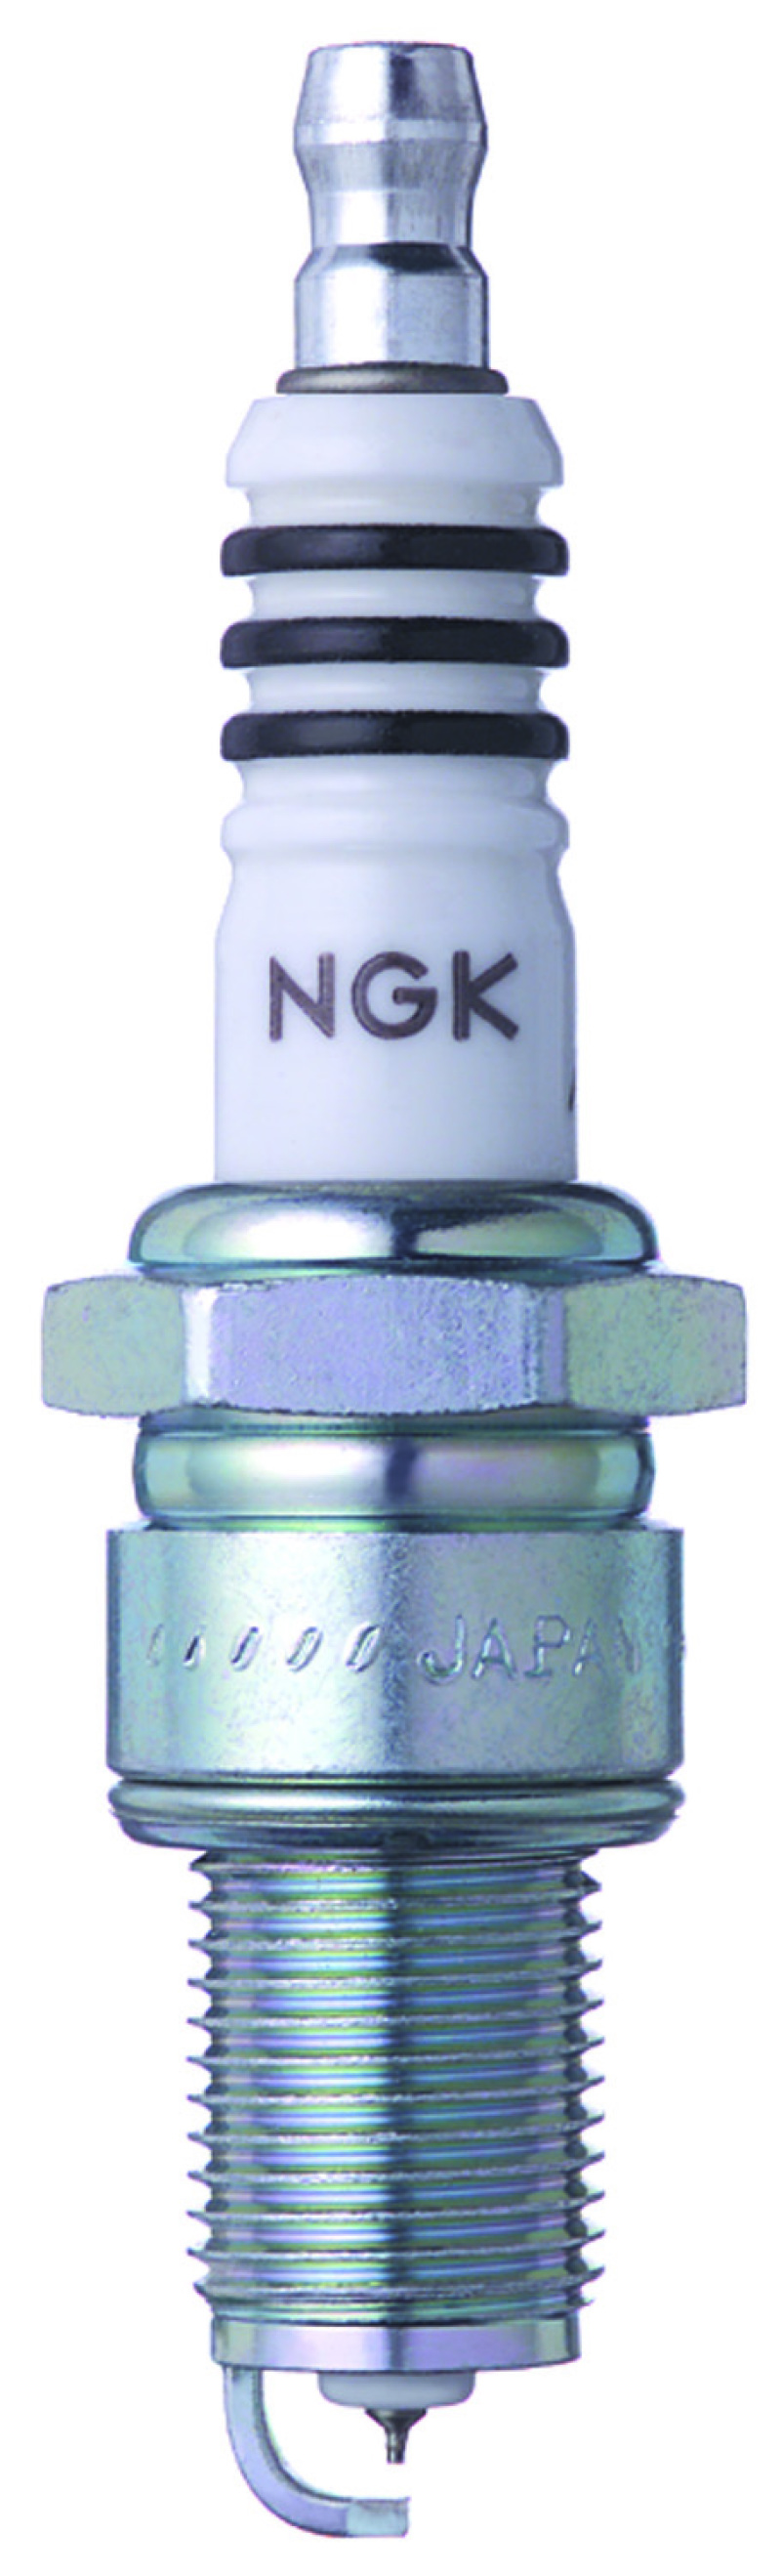 NGK Iridium IX Spark Plug Box of 4 (GR4IX) - 97382